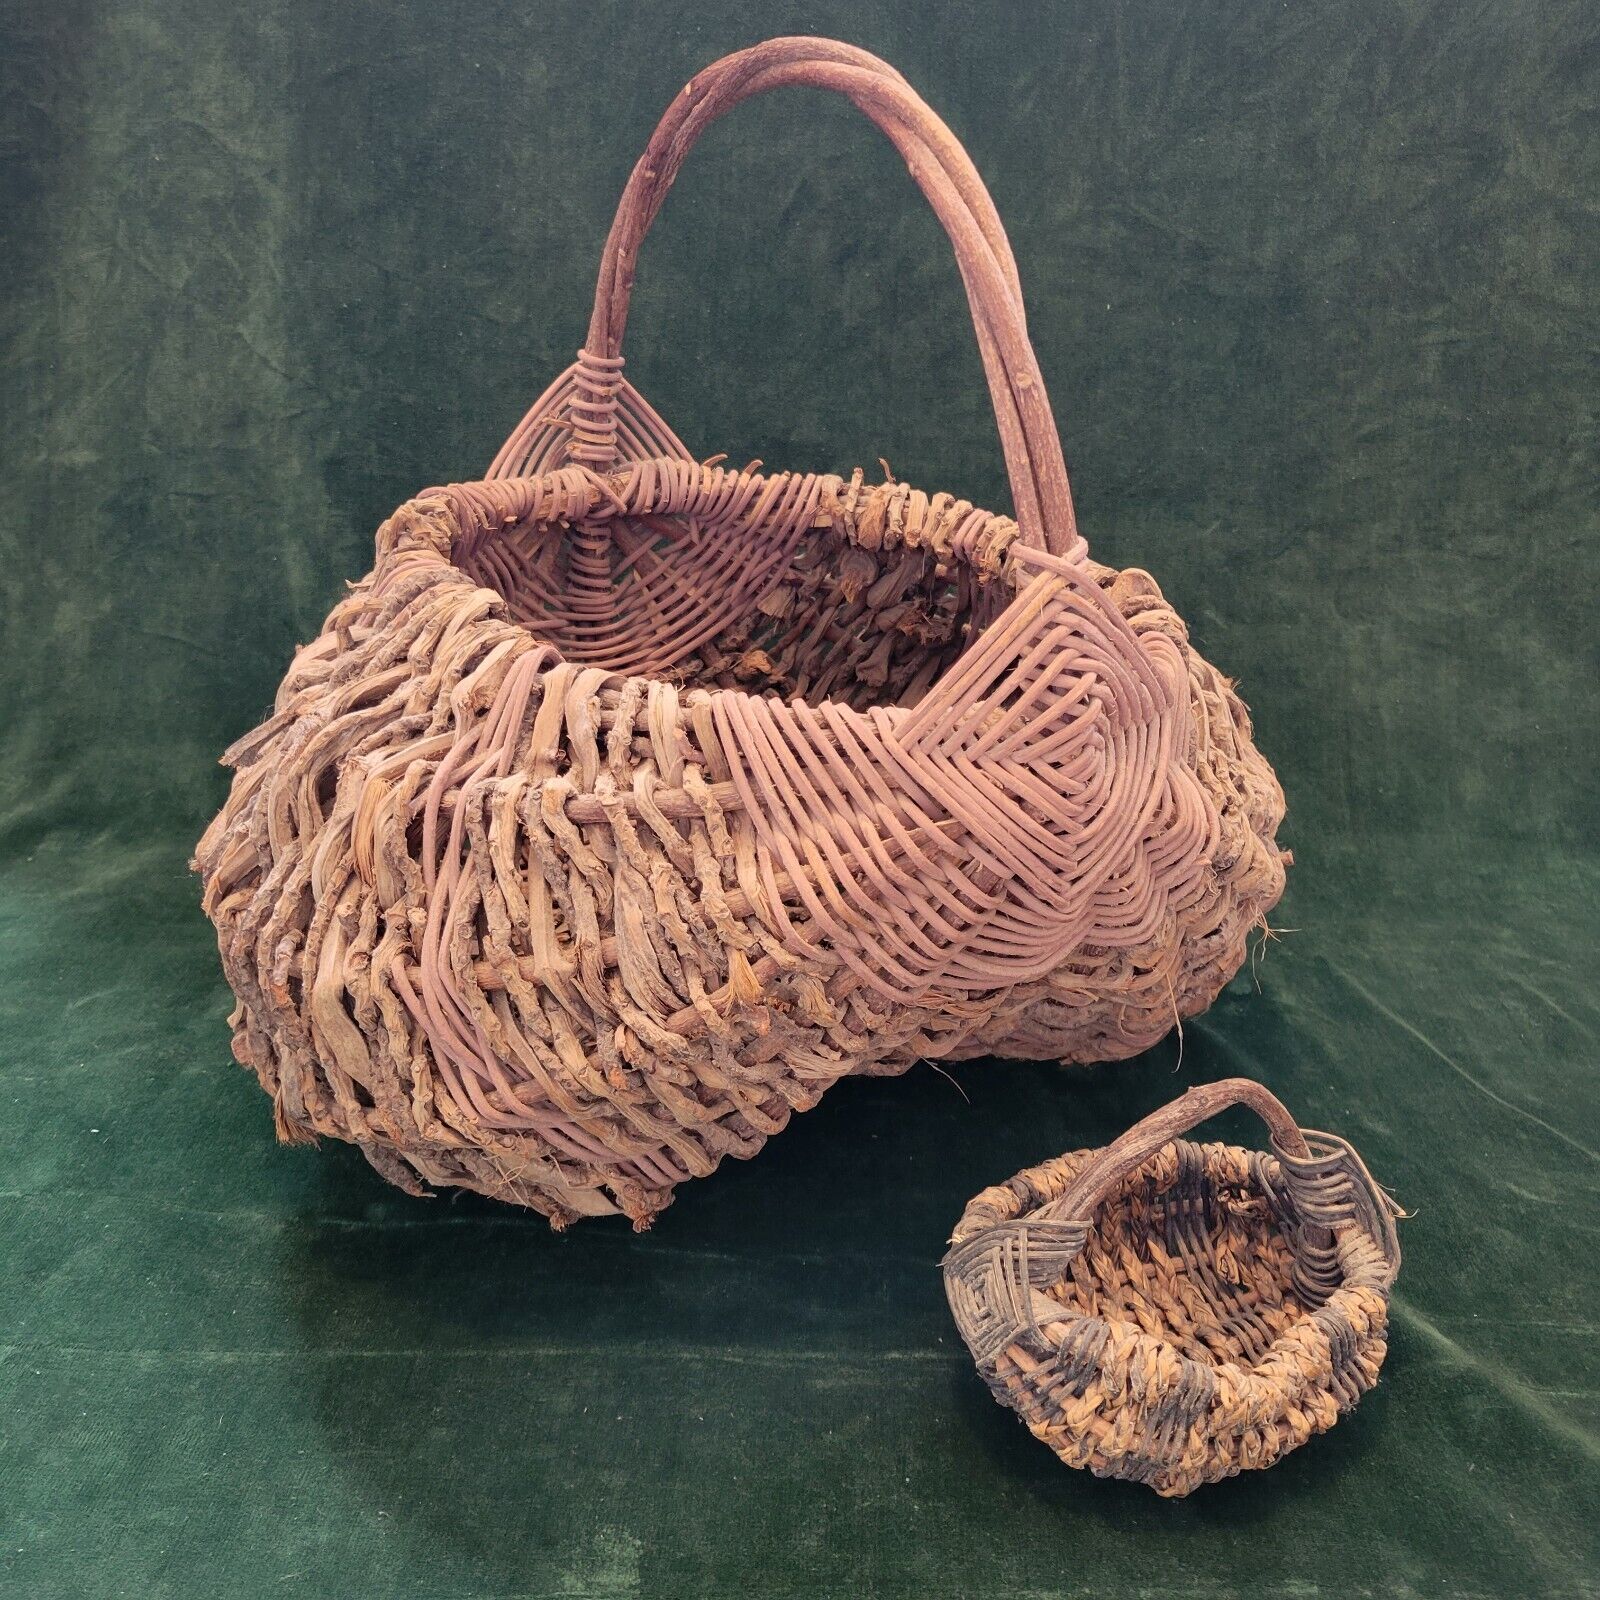 Primitive Antique Large Buttocks Gathering Basket Grape Vine Handle Hand Woven